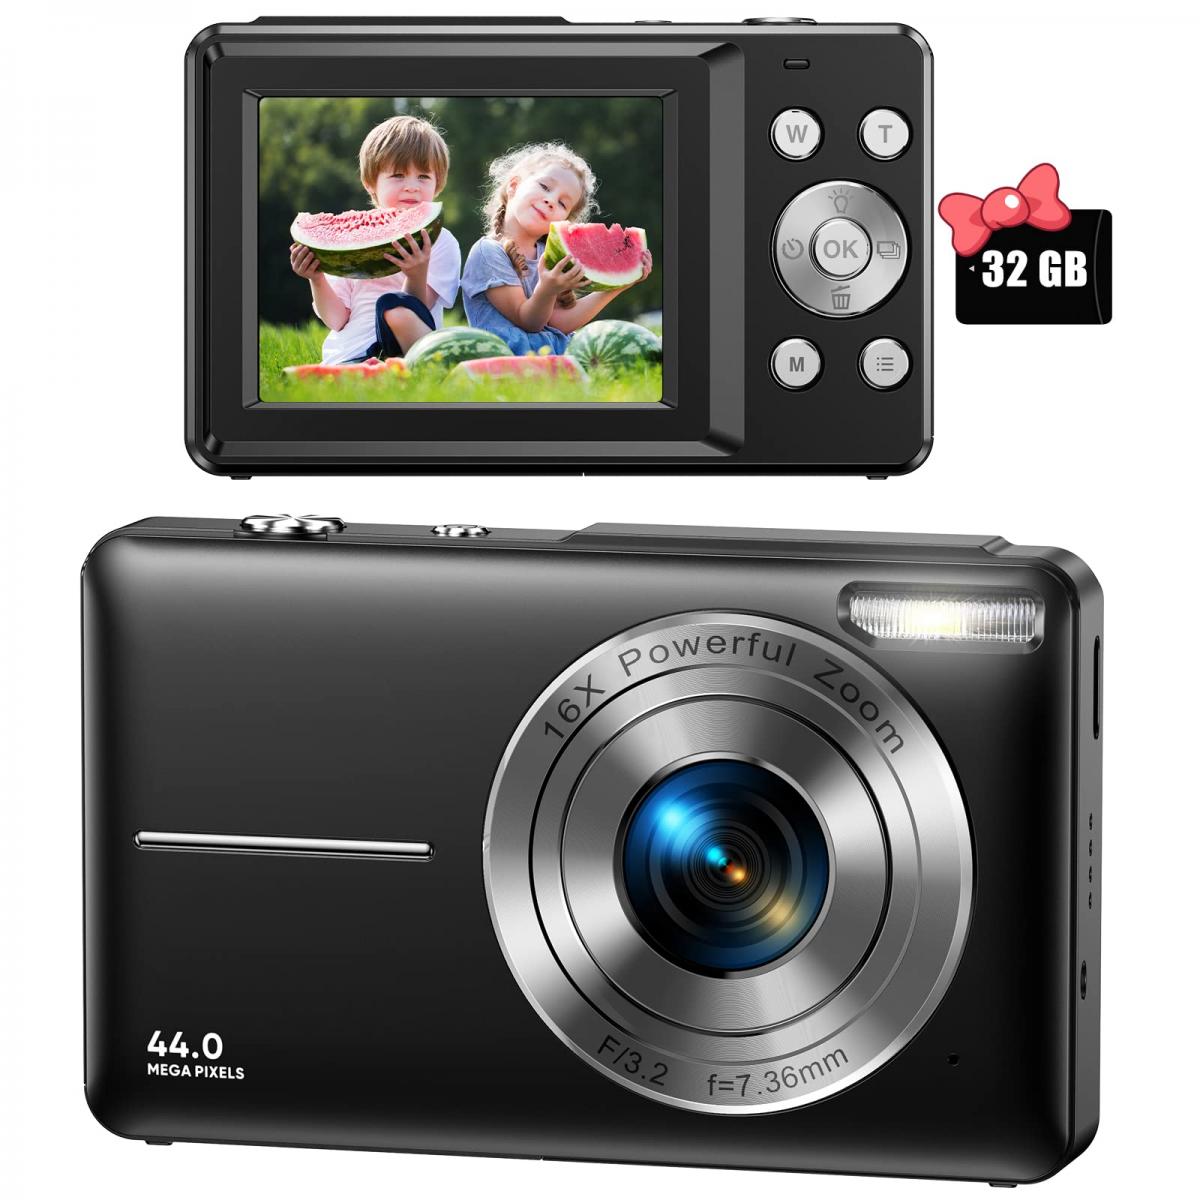 Macchina fotografica per bambini, fotocamera digitale FHD 1080P per bambini  Videocamera con 32GB SD Card 16X zoom digitale, fotocamera compatta punto e  scatto piccola fotocamera portatile per adolescenti studenti ragazzi  ragazze senior (